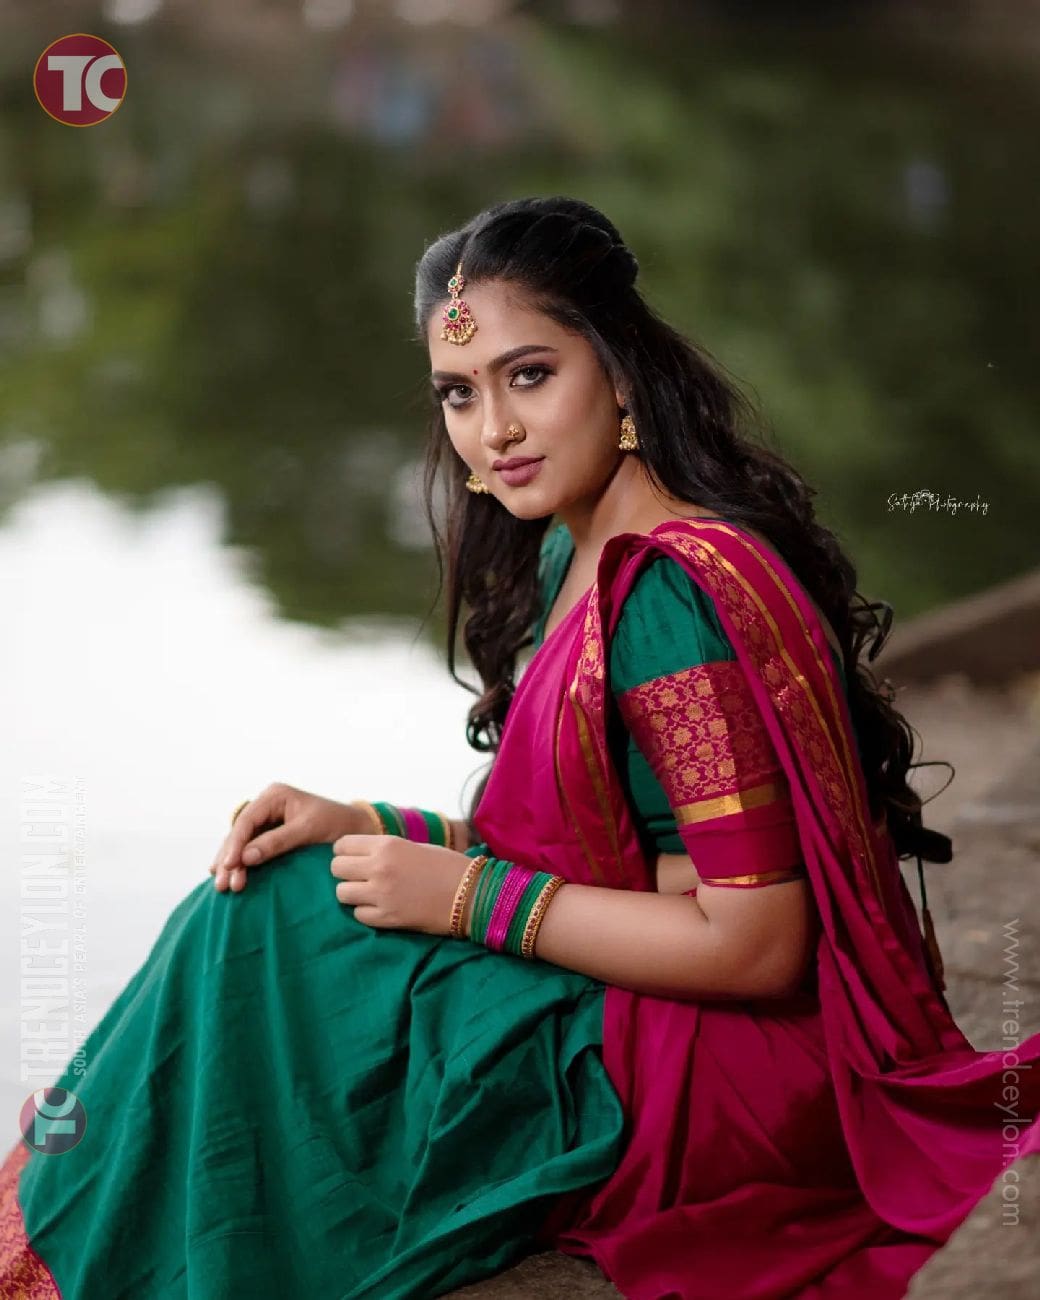 Television Actress Punitha Balakrishnan gorgeous in Saree